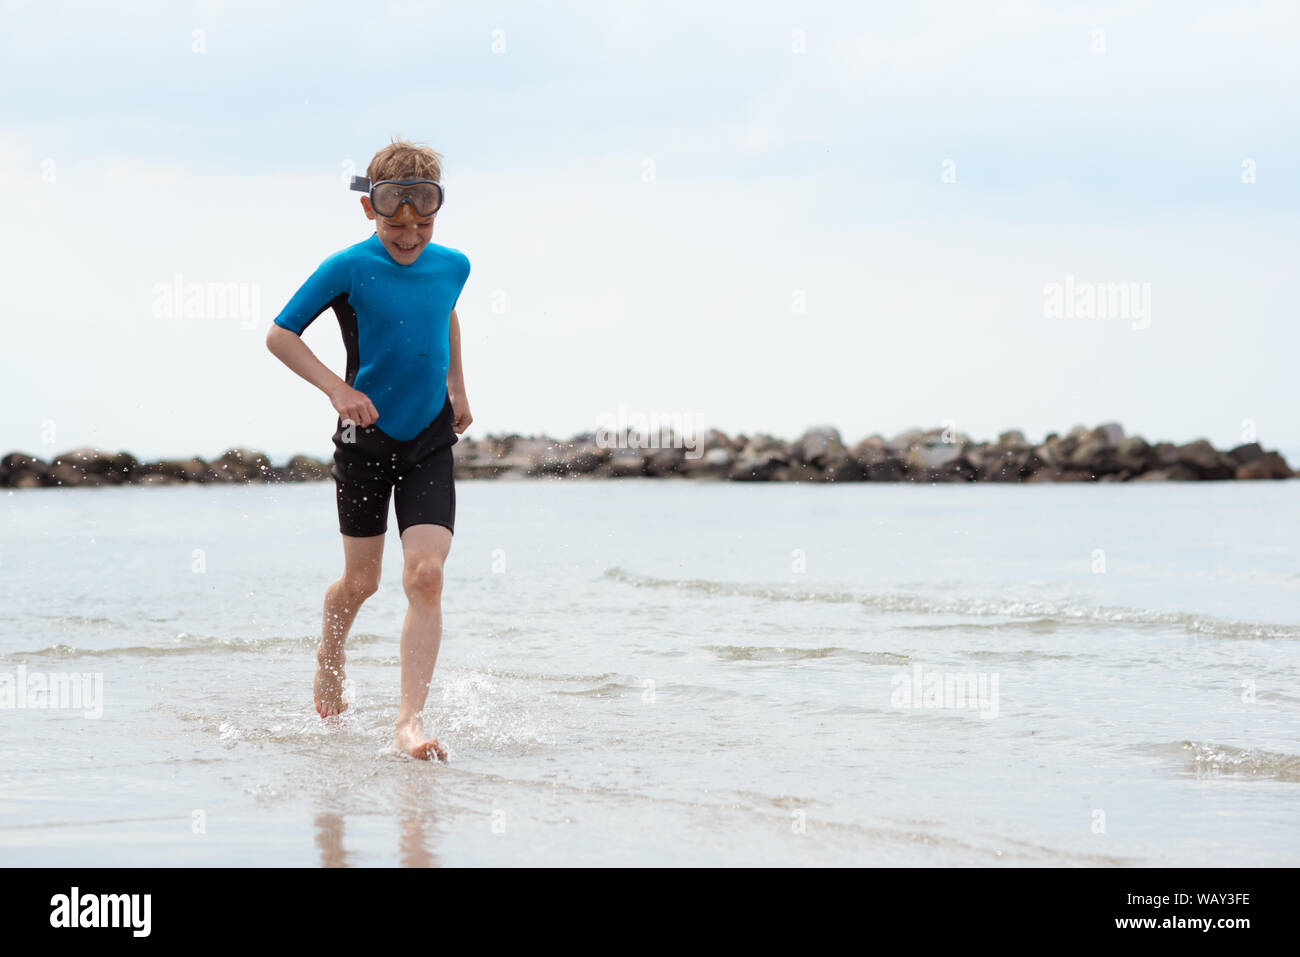 Stattliche jugendlich Junge in Neopren Badeanzug in der Ostsee  Stockfotografie - Alamy